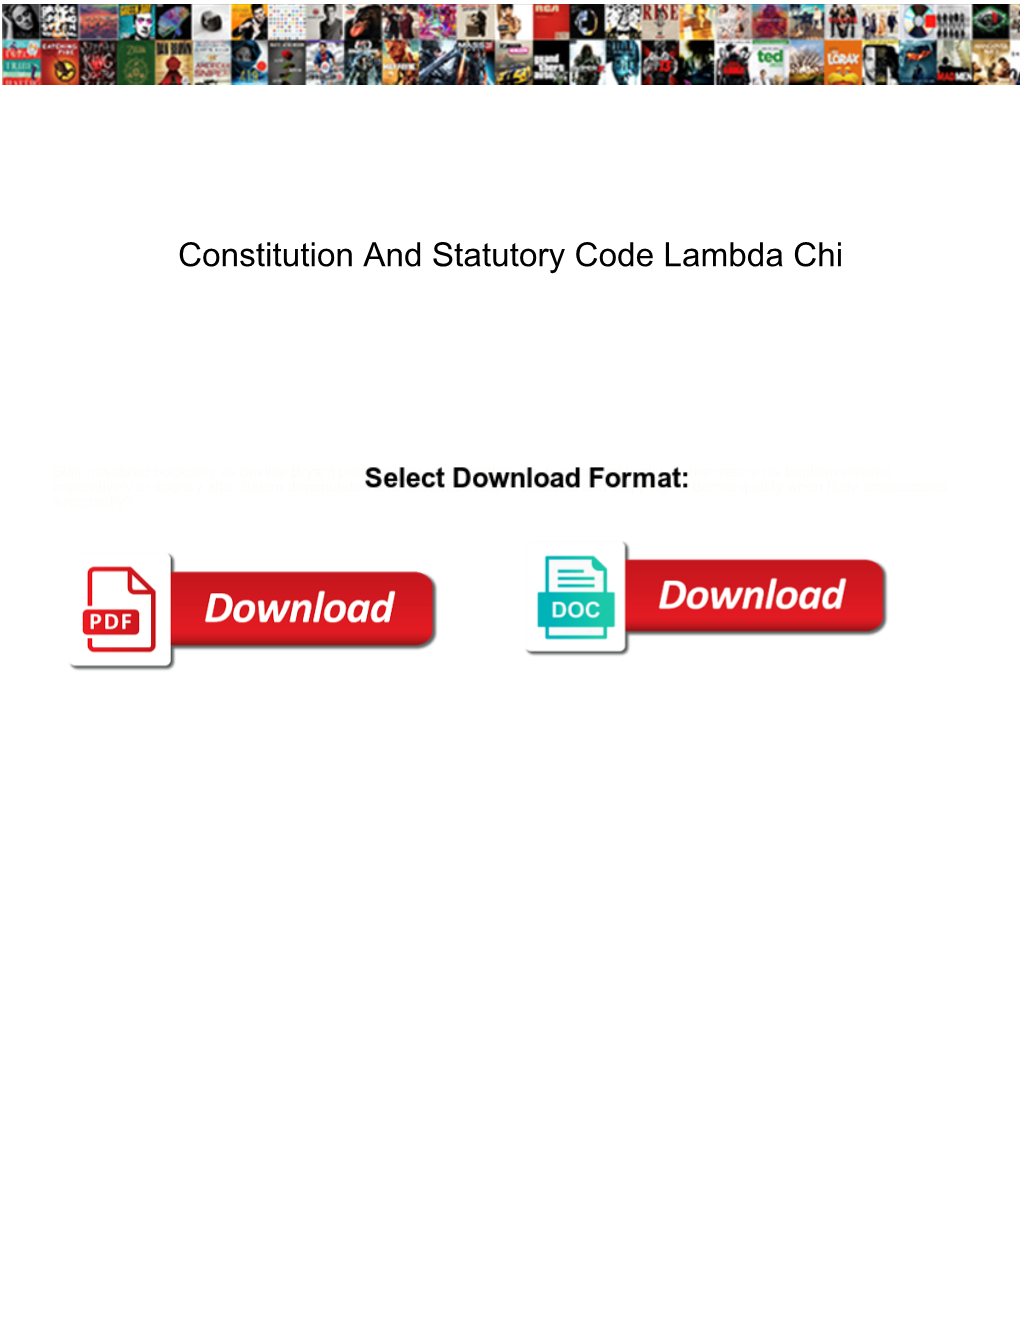 Constitution and Statutory Code Lambda Chi